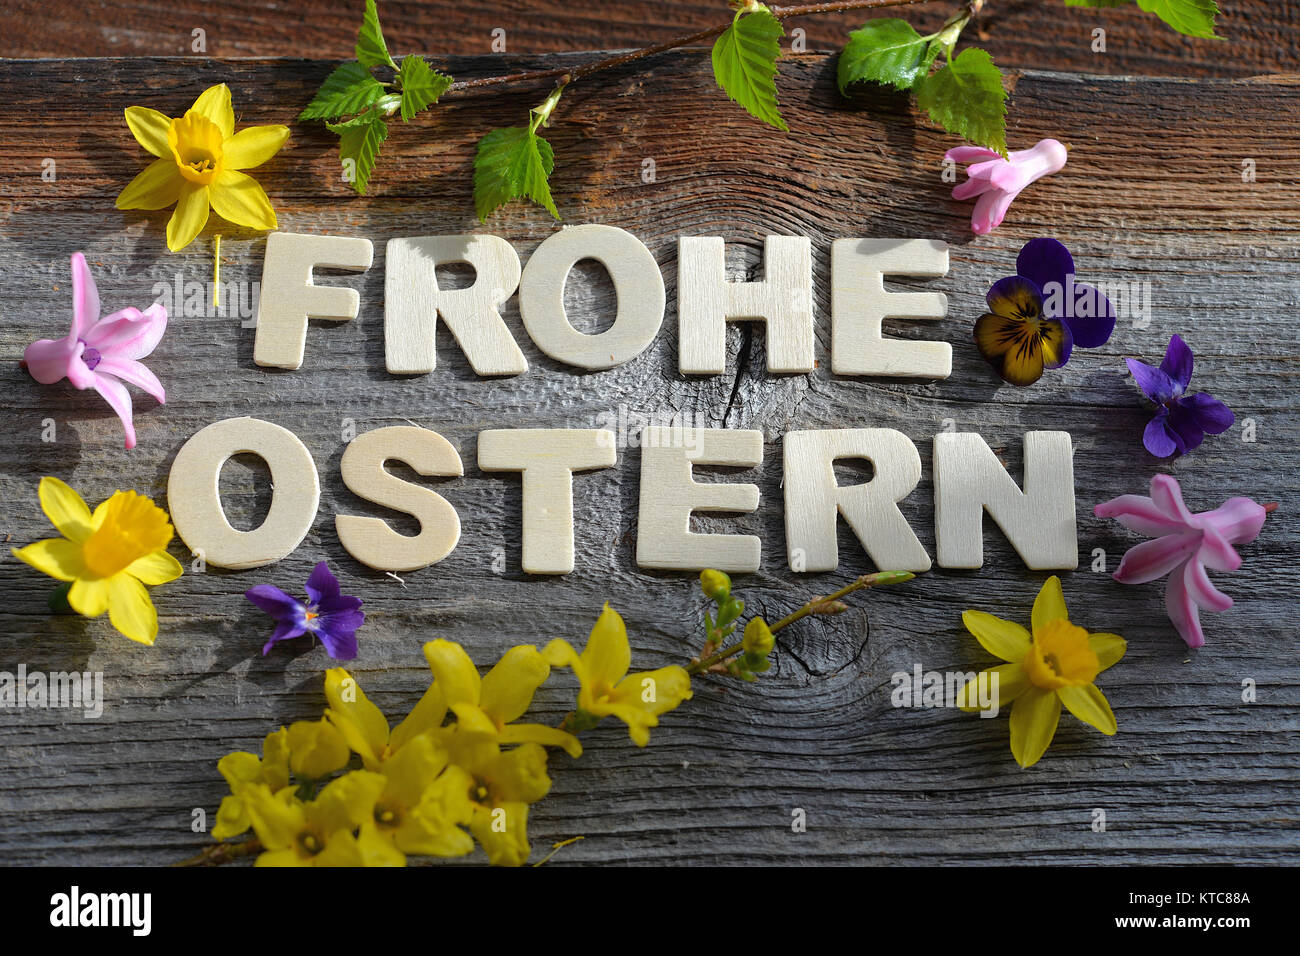 Frohe Ostern auf Holzhintergrund Stock Photo